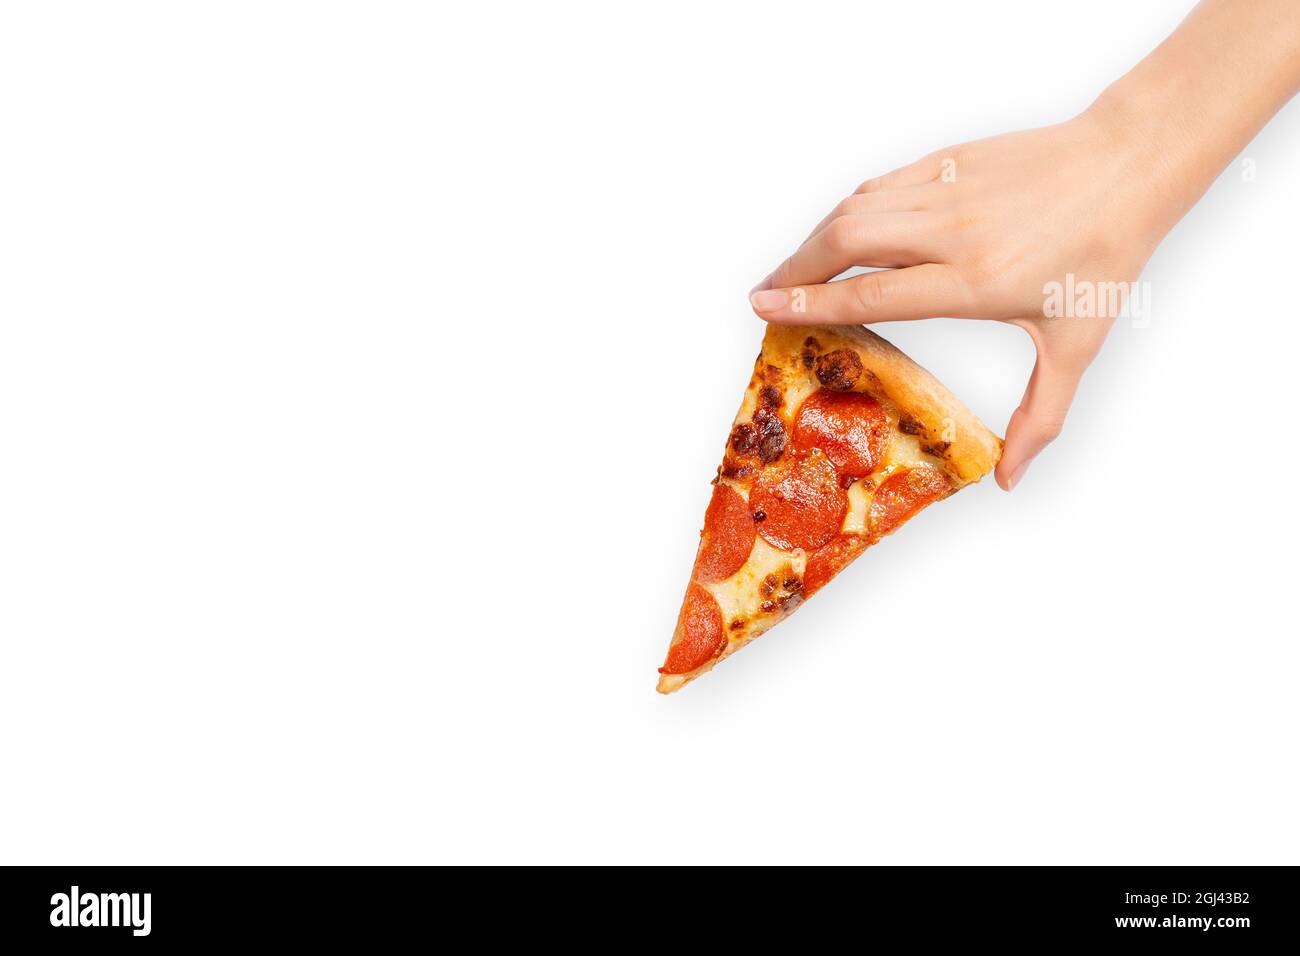 Fetta di pizza al peperone in mano isolata su bianco. Vista dall'alto sulla pizza paperoni. Concetto di cucina italiana, Street food, fast food, bocconcini veloci. Banner Foto Stock